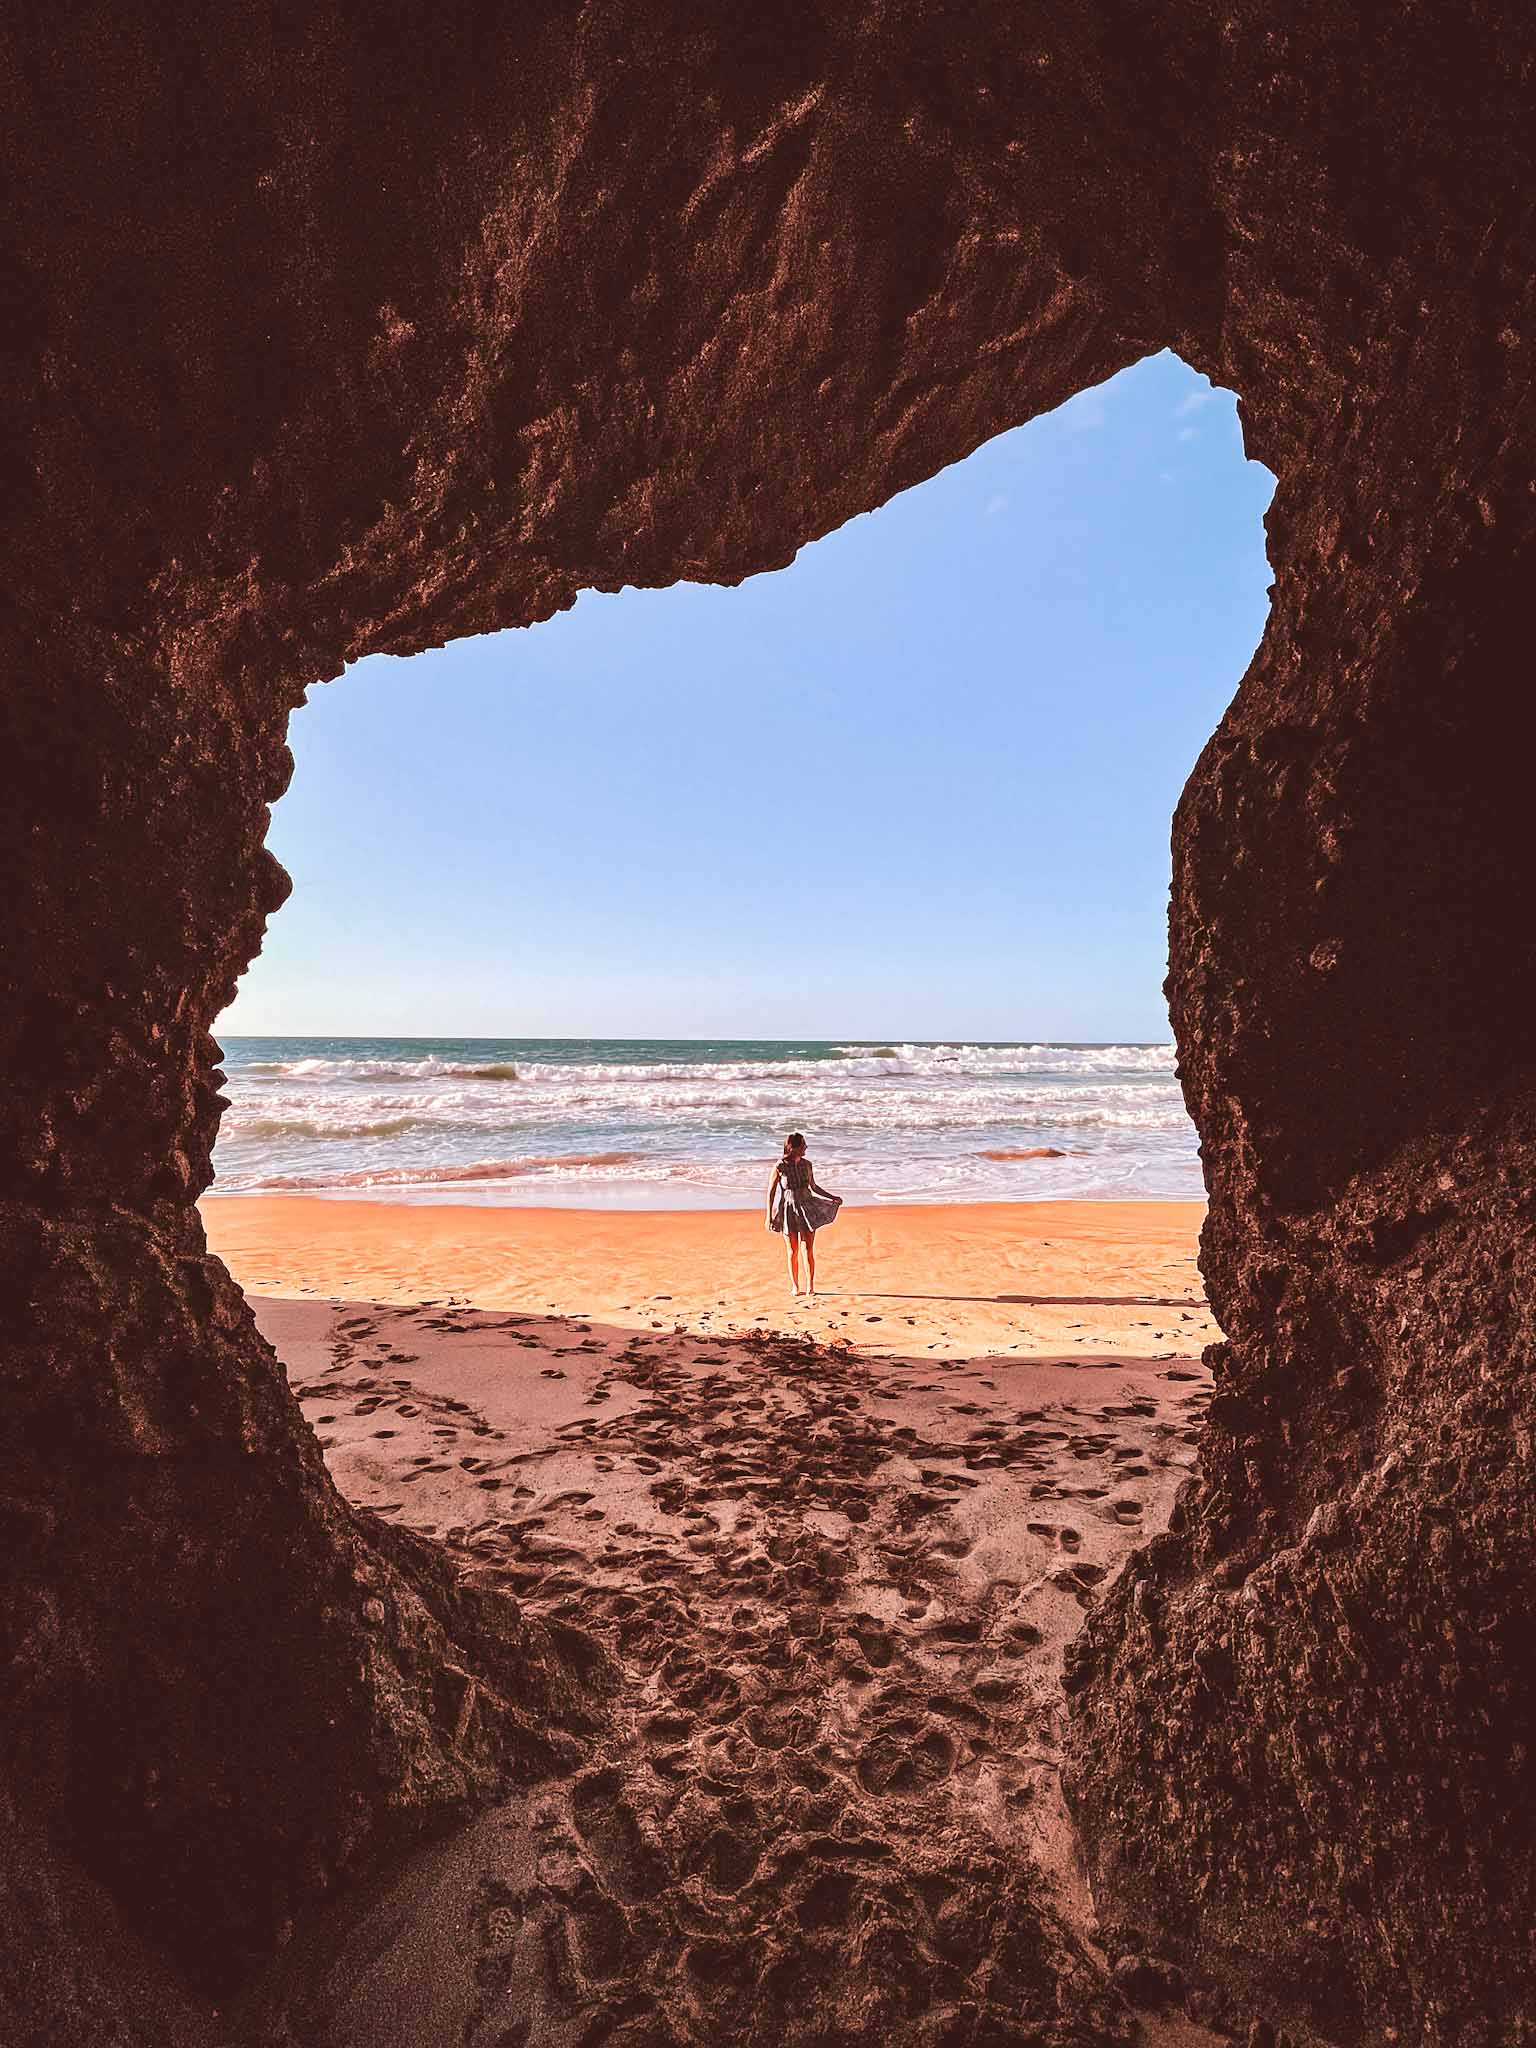 Caves in Fuerteventura